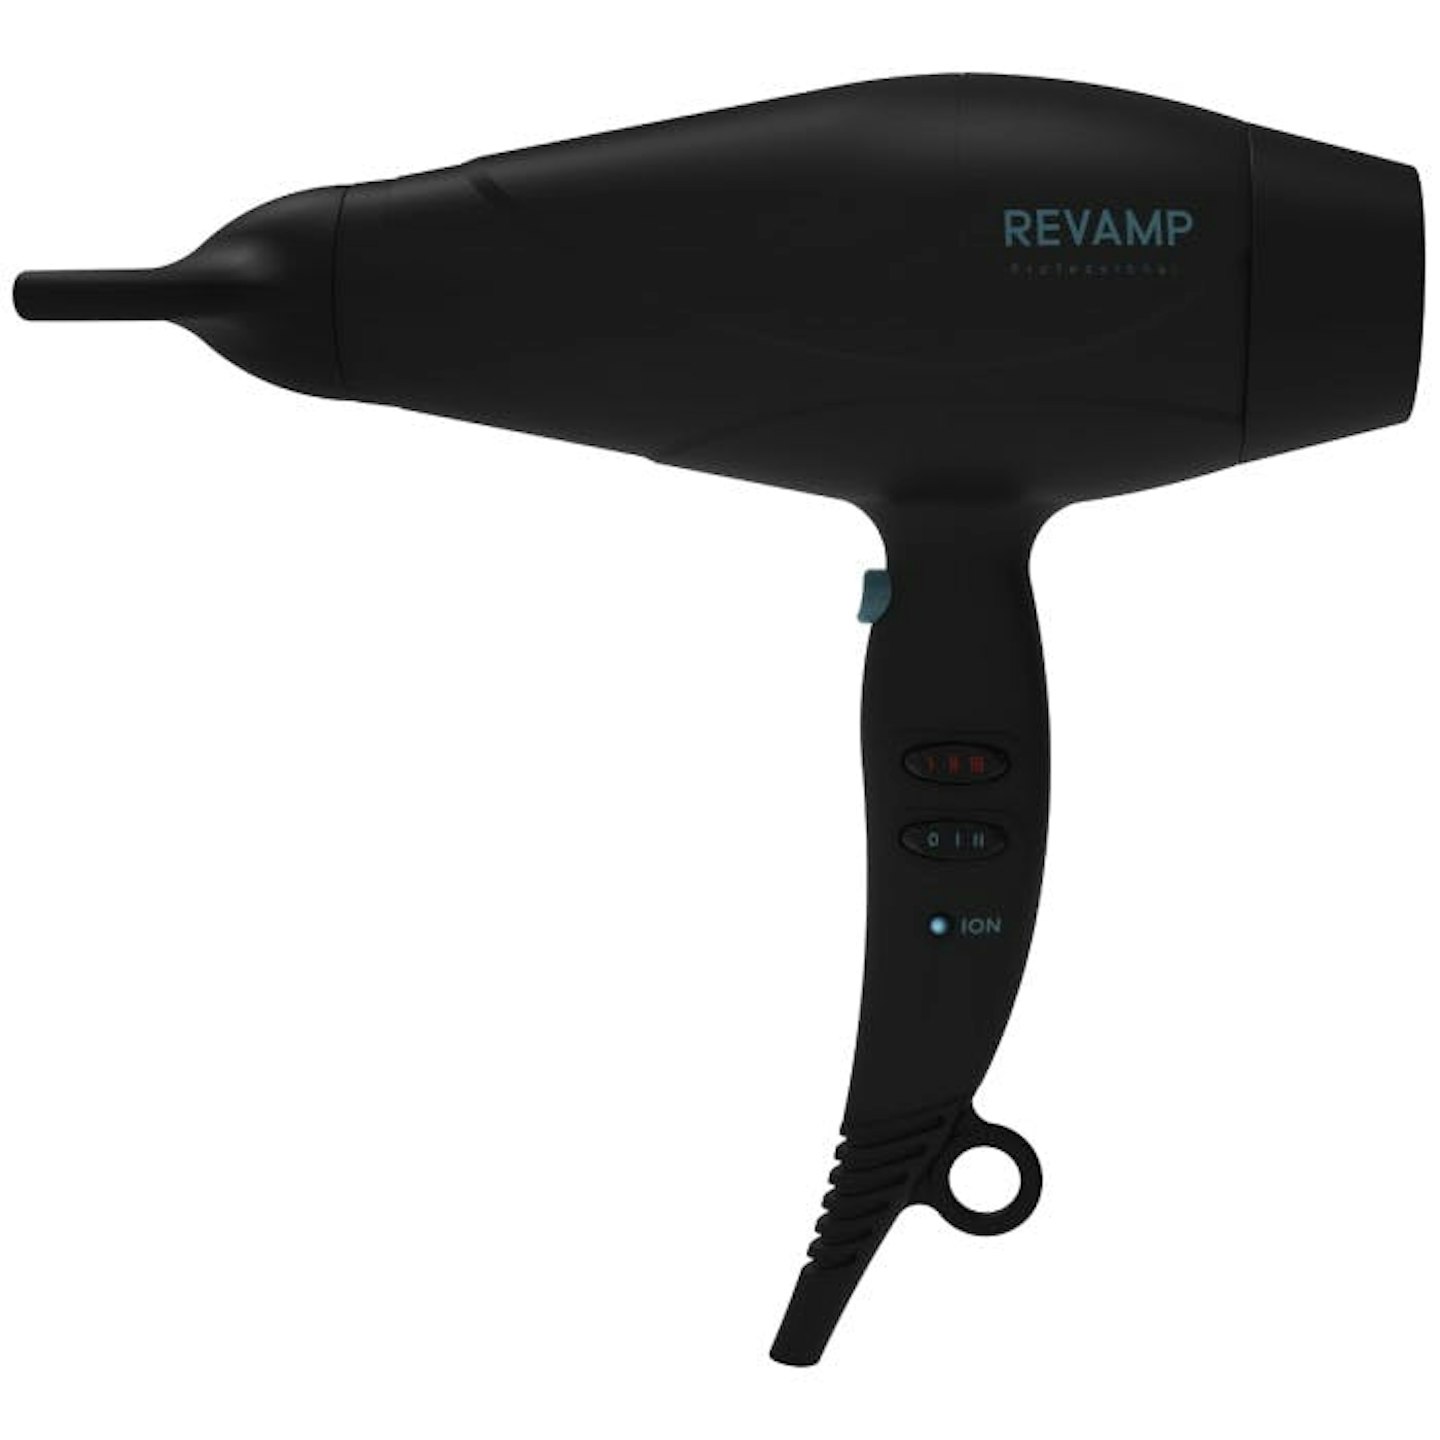 Revamp Progloss 5000 Hair Dryer